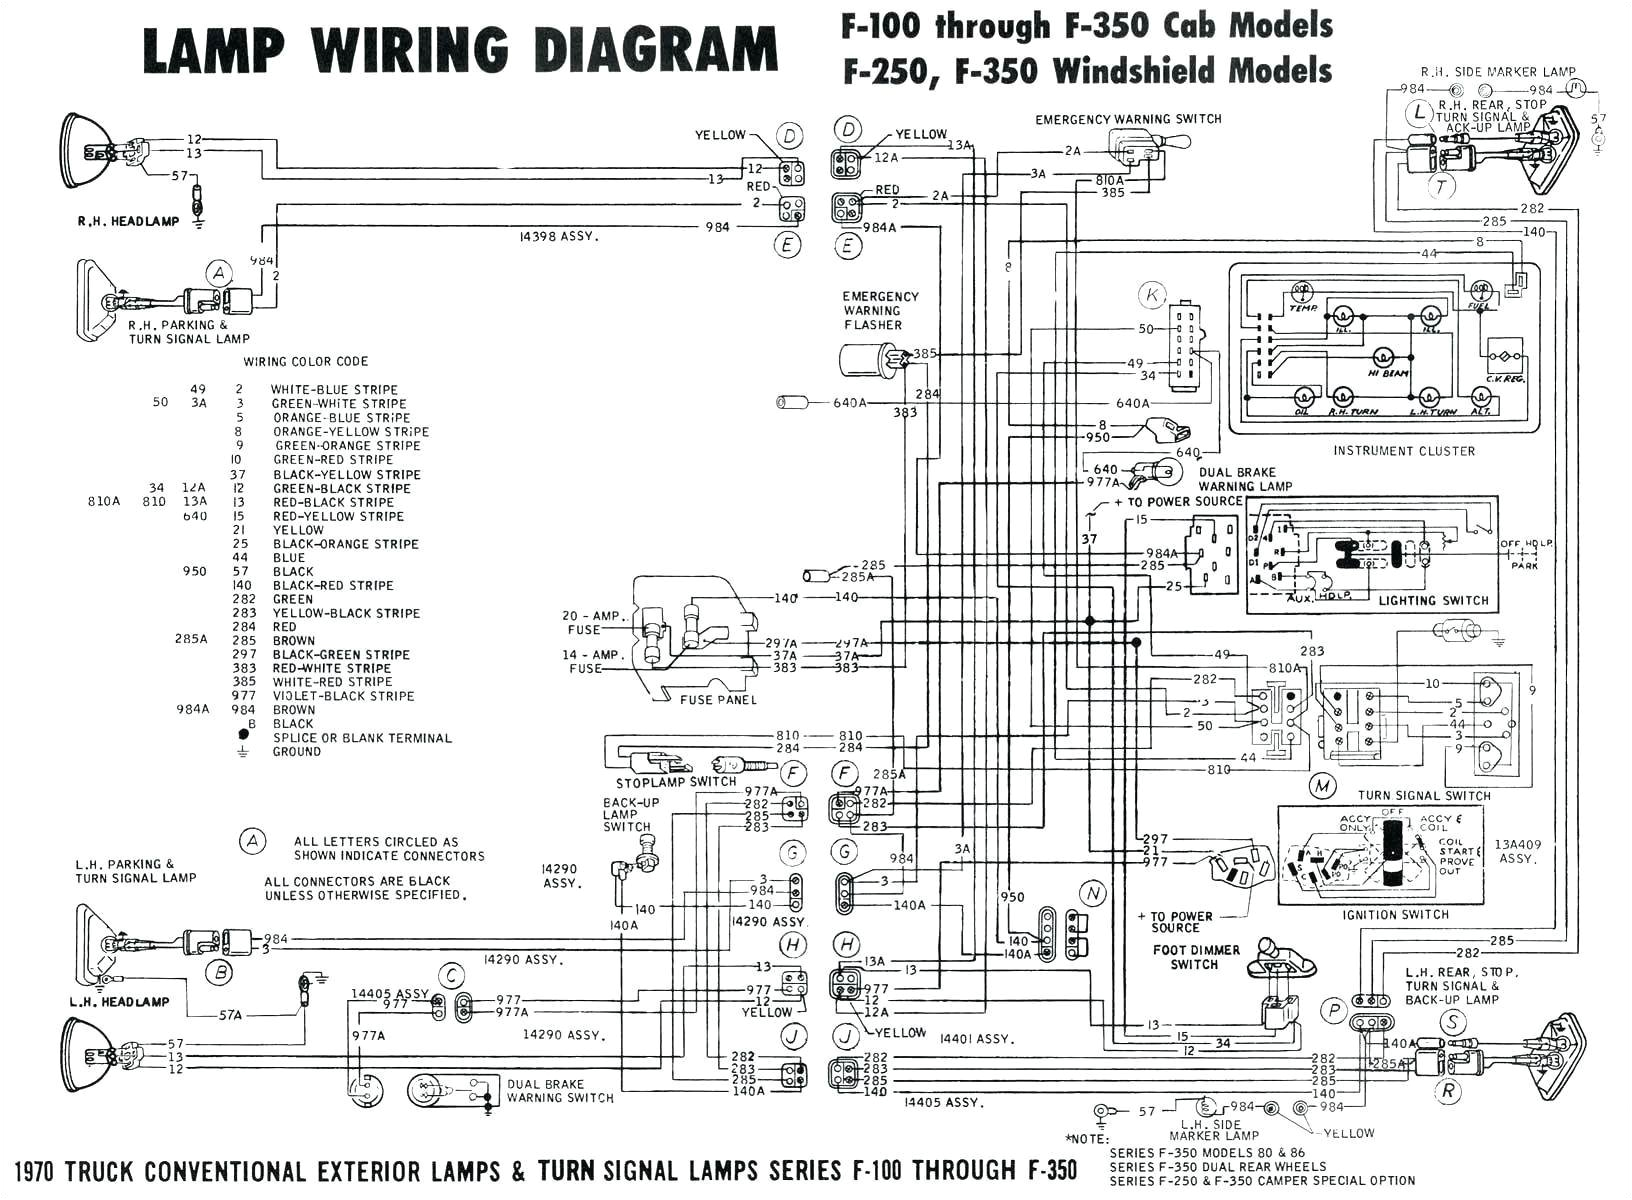 american standard furnace wiring diagram ysc048 a4 madd wiring american standard furnace wiring diagram ysc048a4emadd